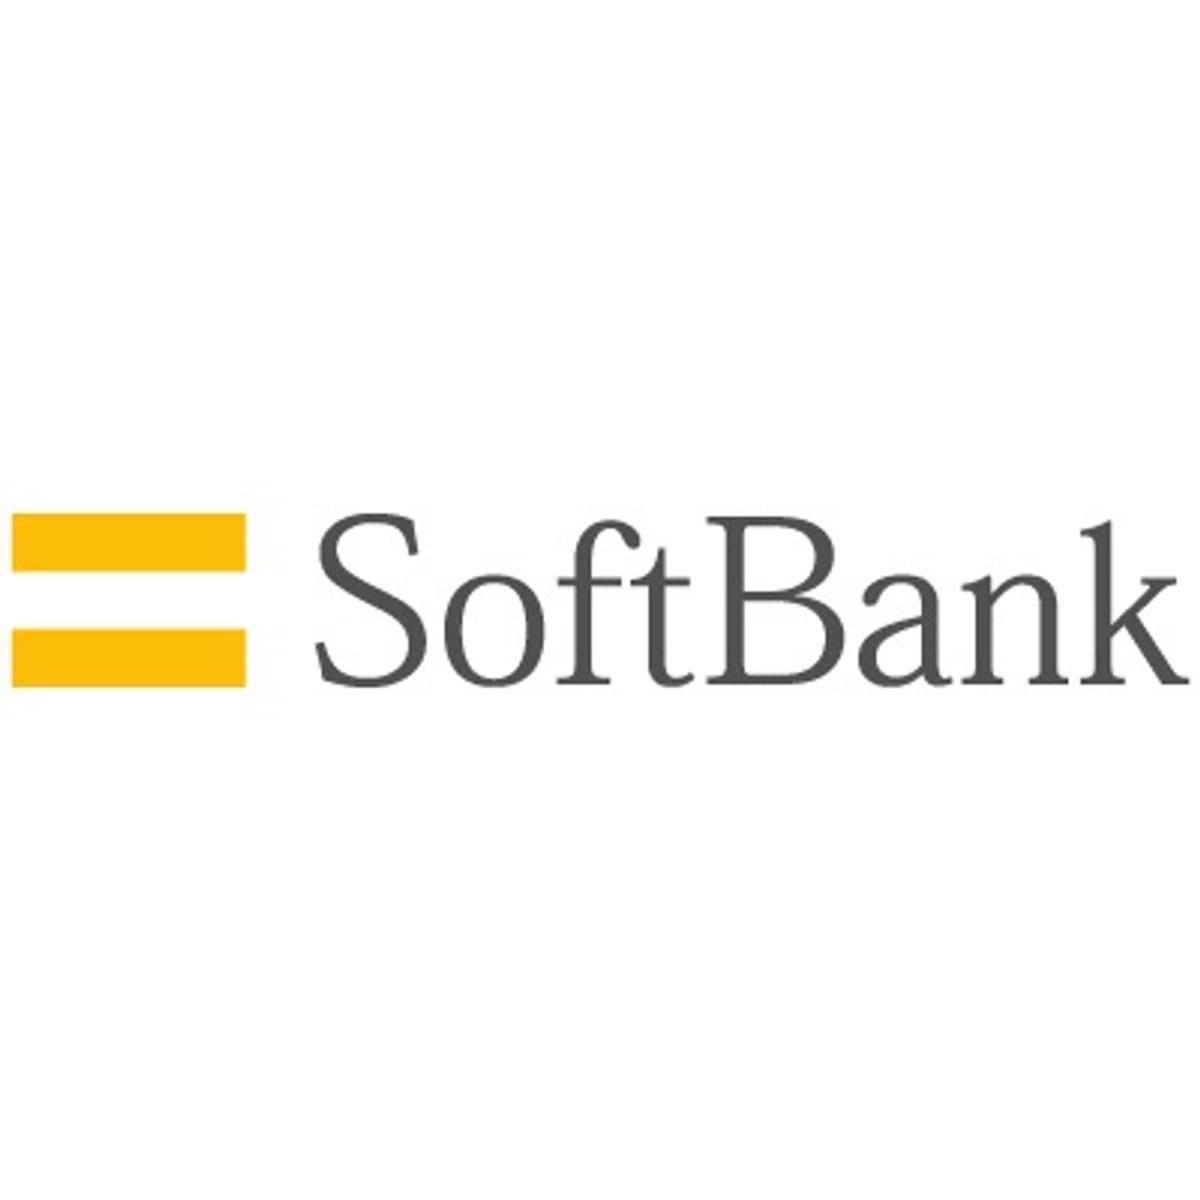 SoftBank brengt zijn divisie voor mobiele telefonie naar de beurs image